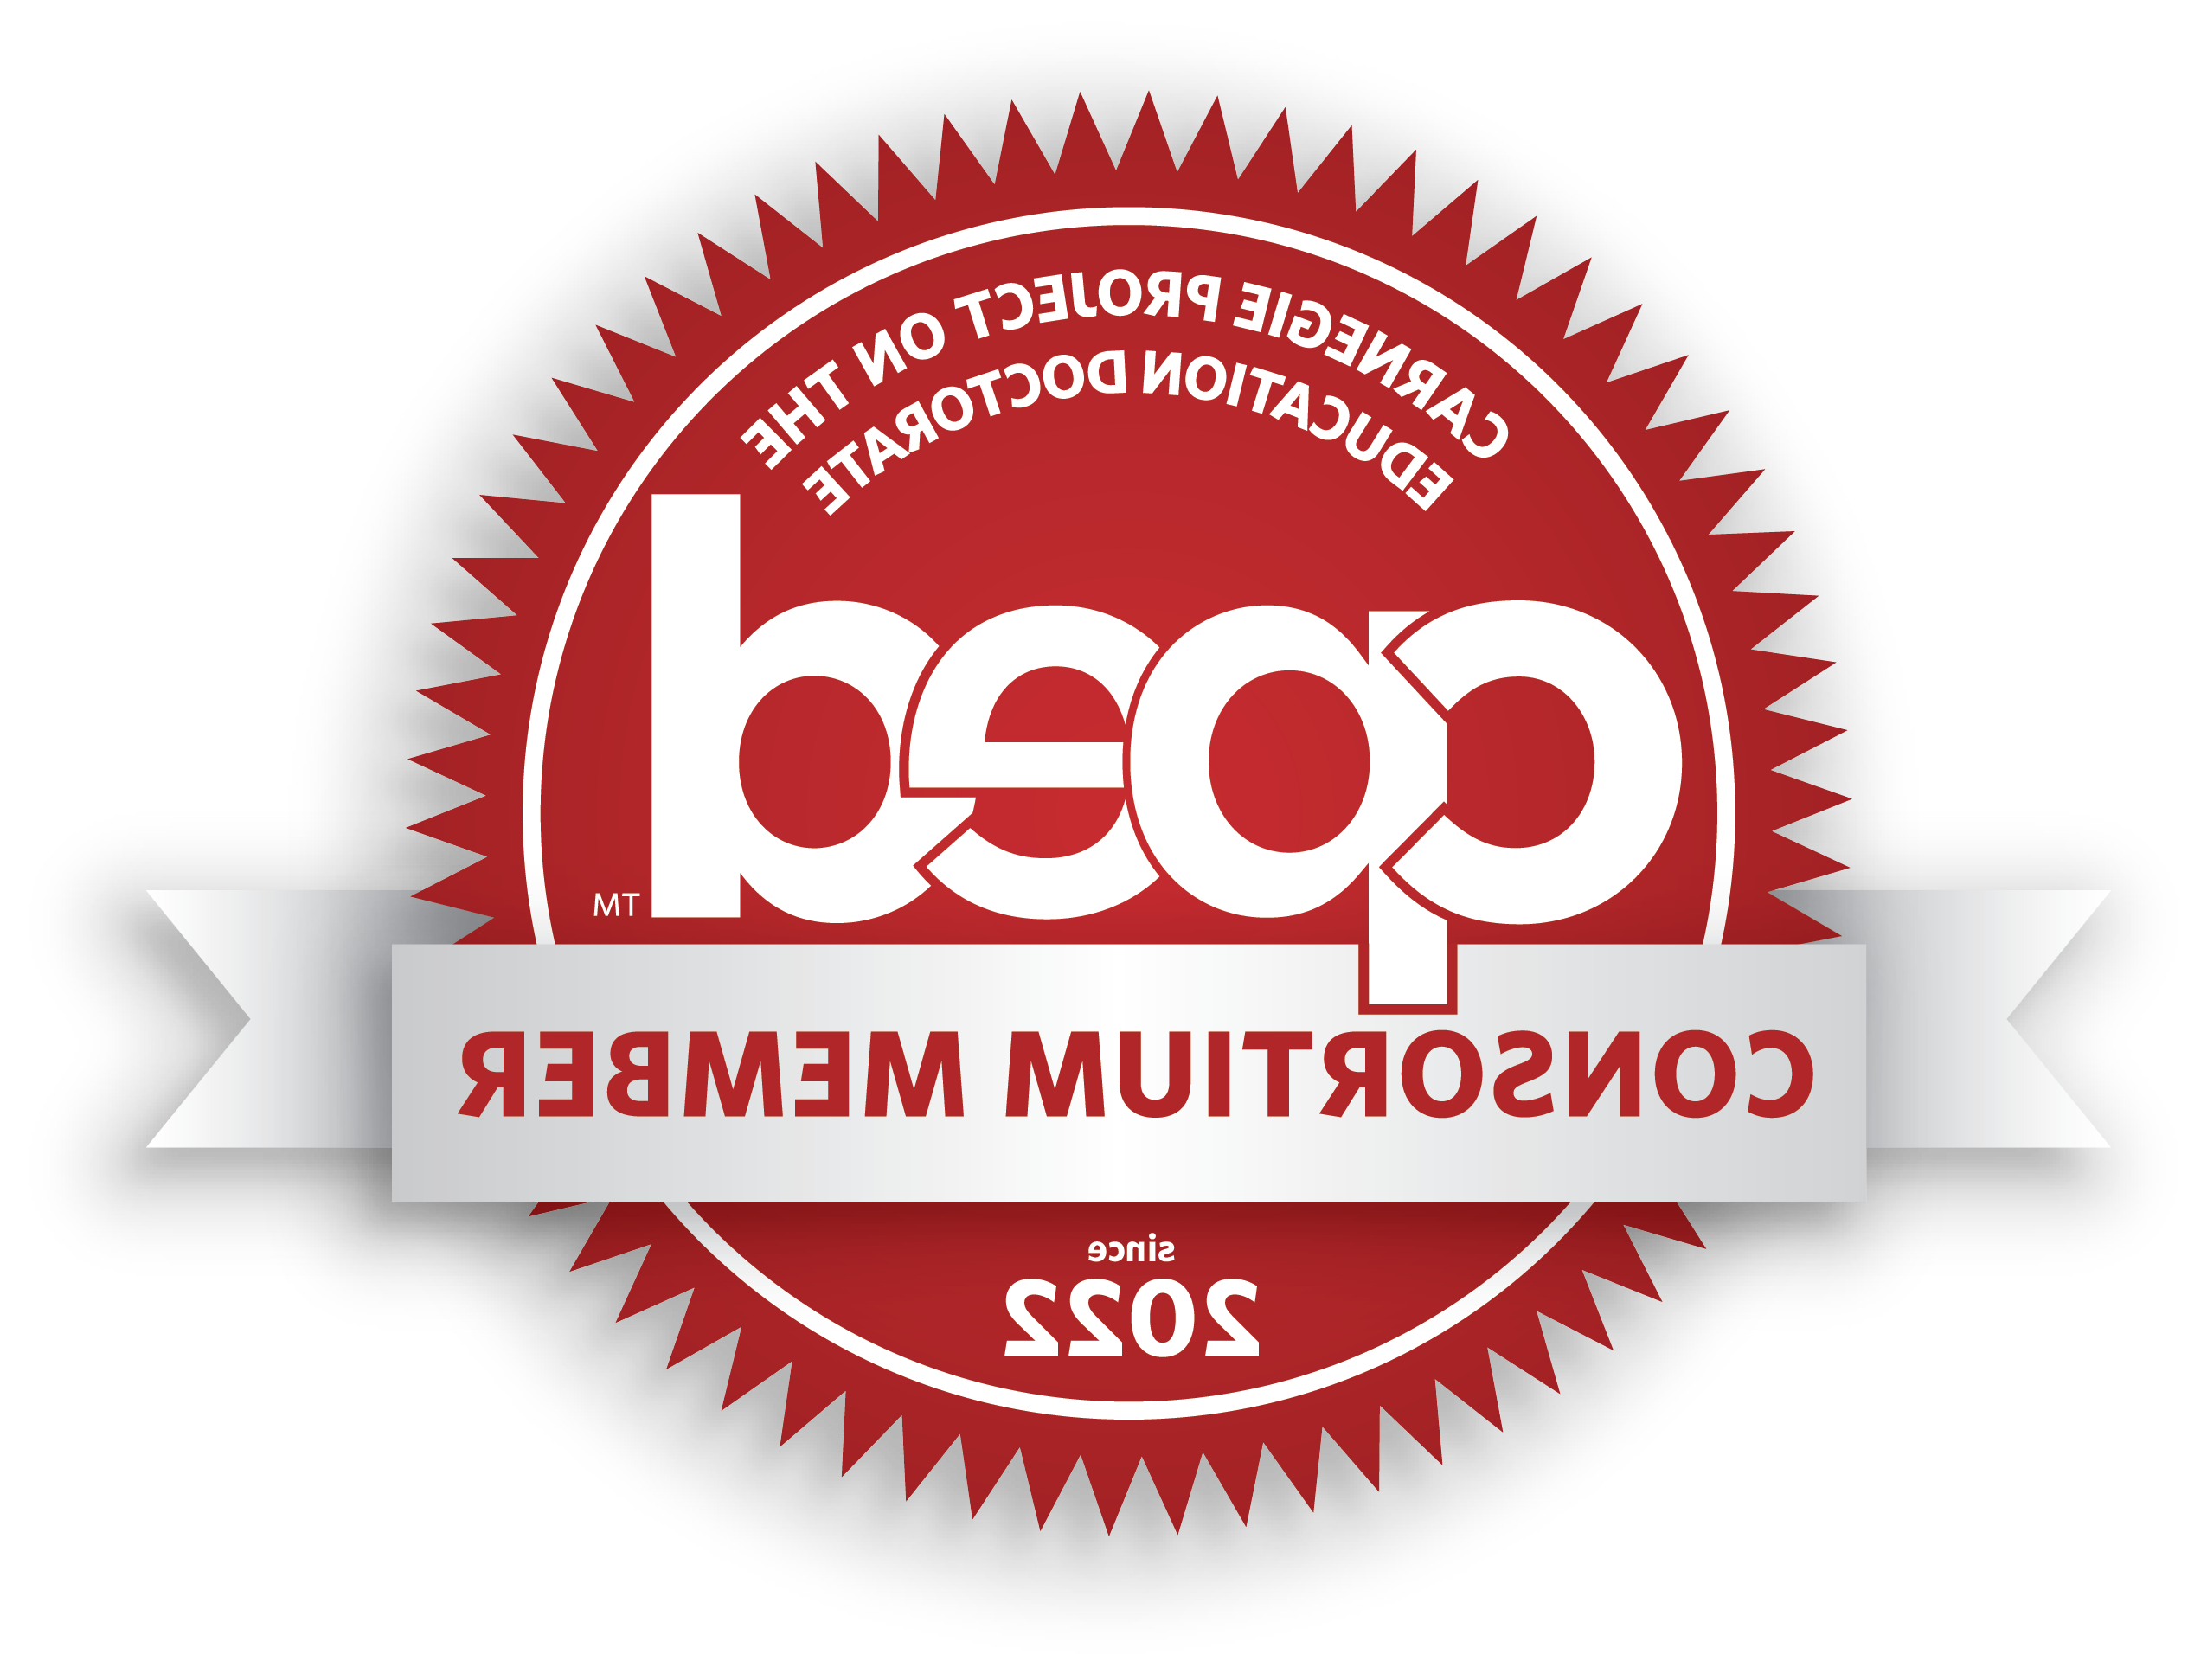 CPED Member Logo